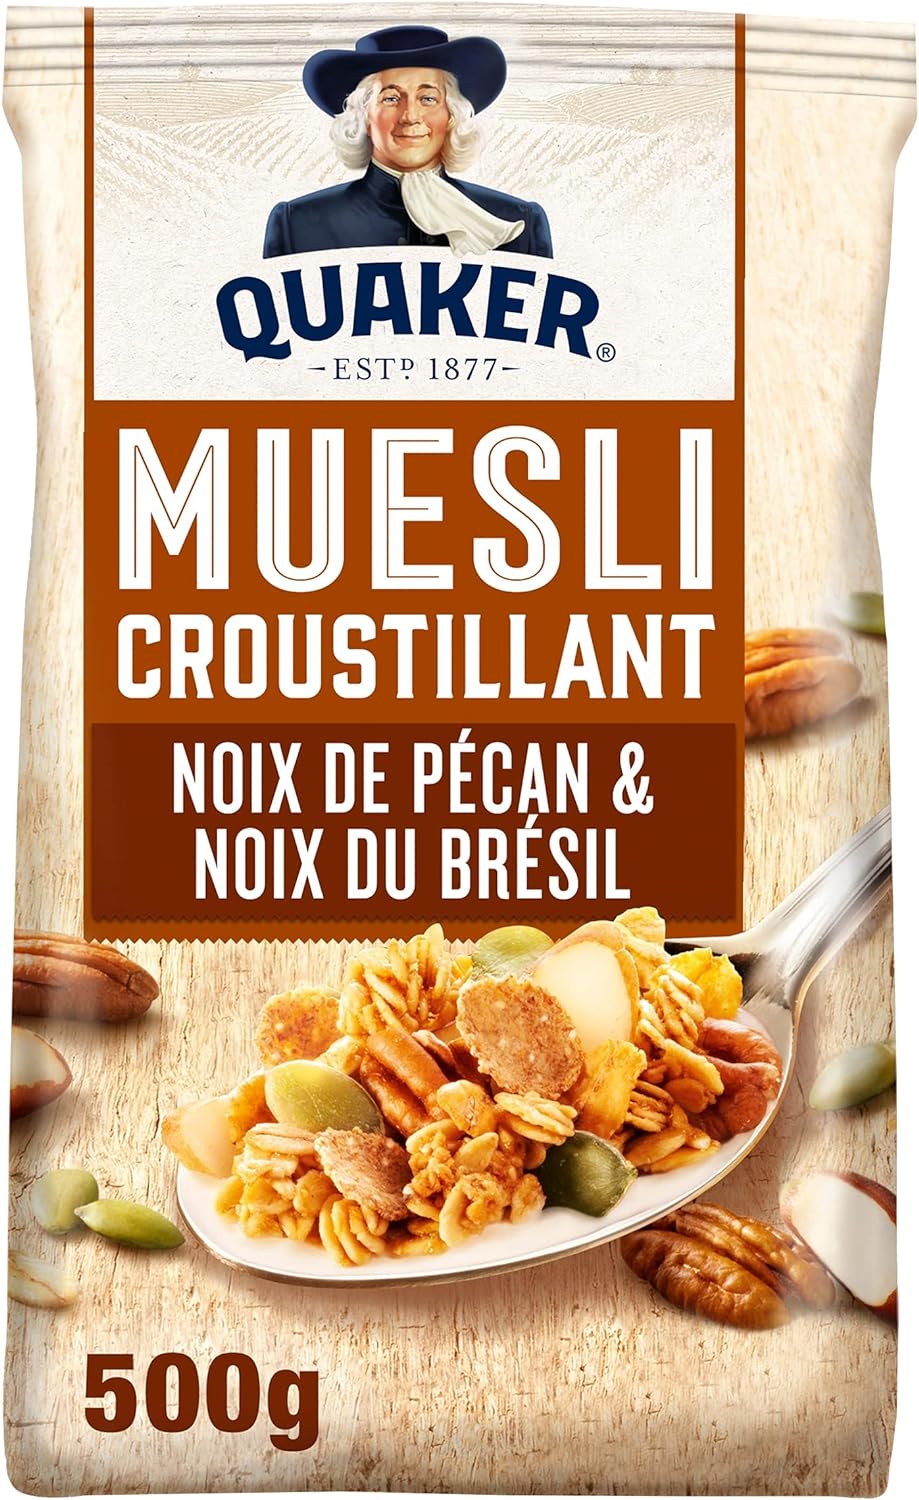 Quaker Muesli Croustillant Noix de Pécan & du Brésil 500g - Fibres et saveurs naturelles pour un petit-déjeuner énergisant